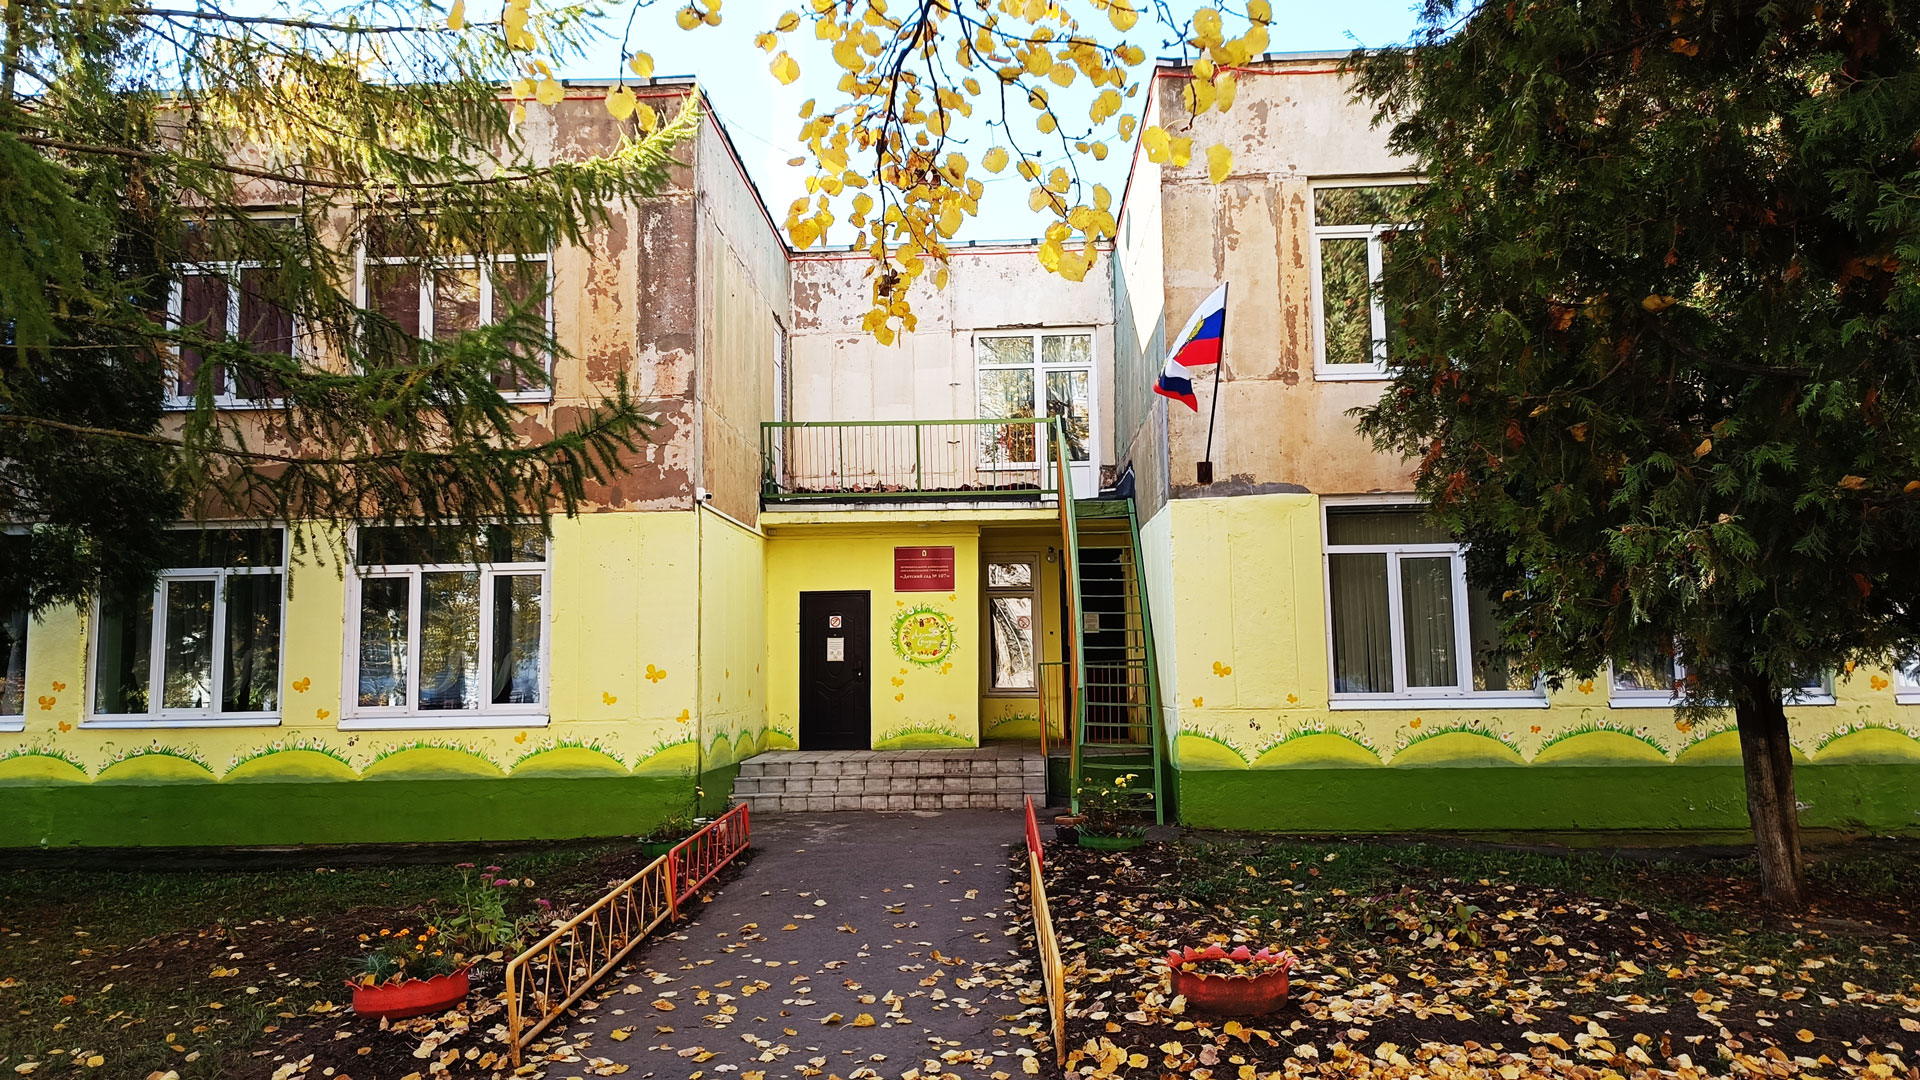 Детский сад 107 Ярославль: общий вид здания.